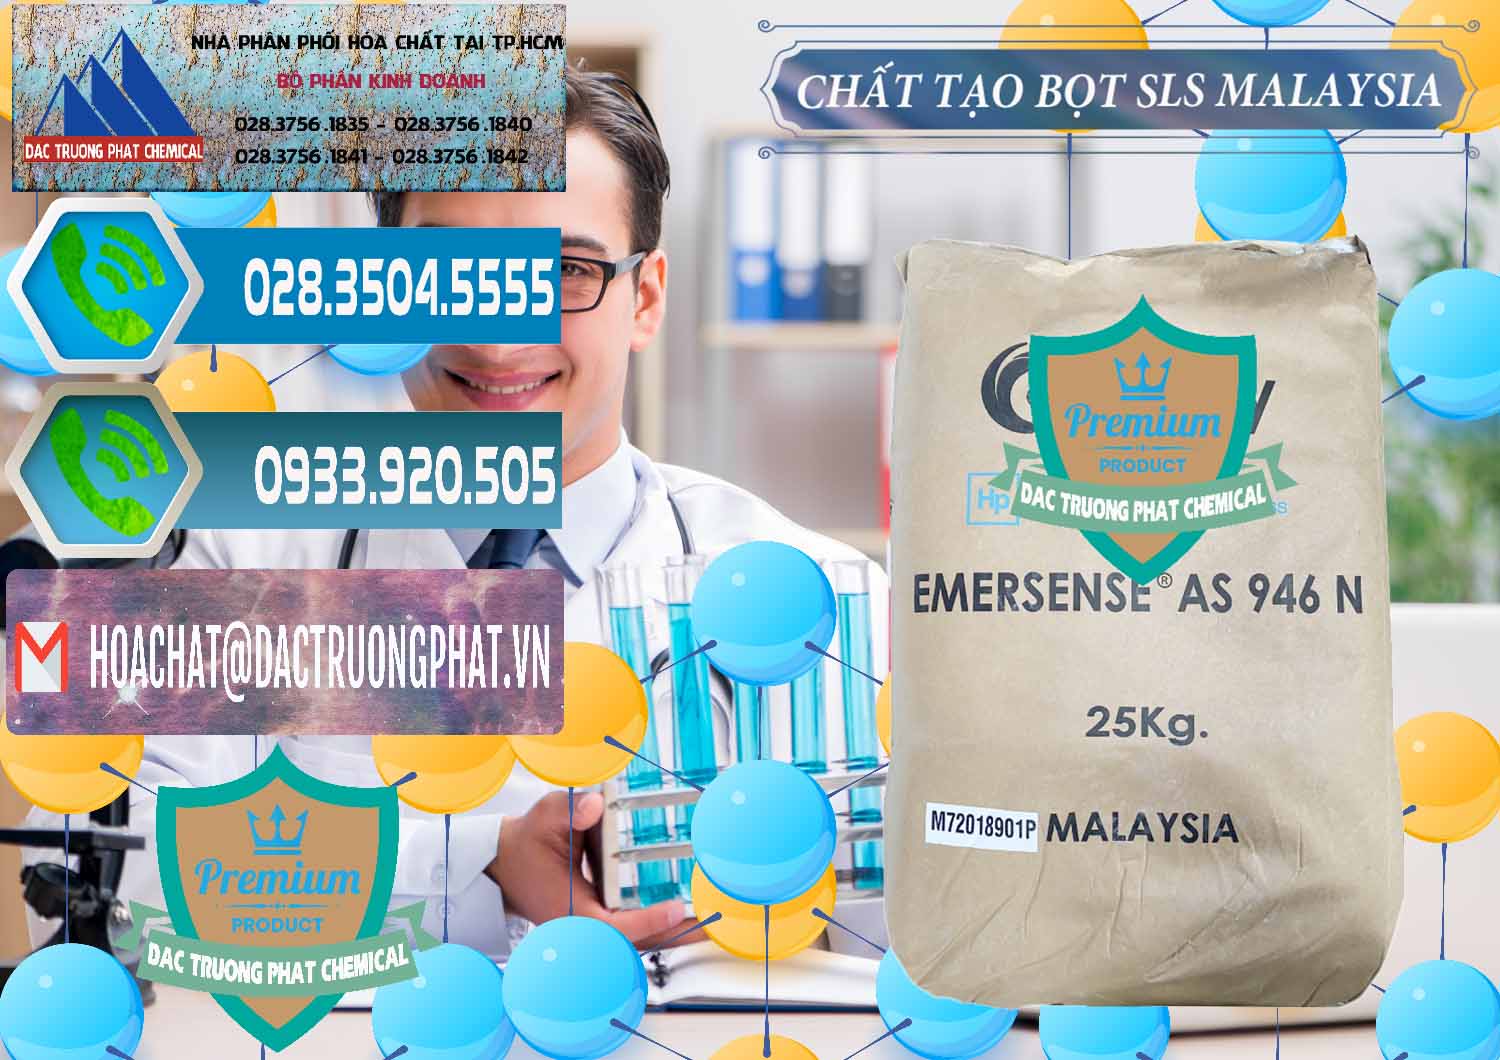 Công ty chuyên kinh doanh và bán Chất Tạo Bọt SLS Emery - Emersense AS 946N Mã Lai Malaysia - 0423 - Chuyên kinh doanh - cung cấp hóa chất tại TP.HCM - congtyhoachat.net